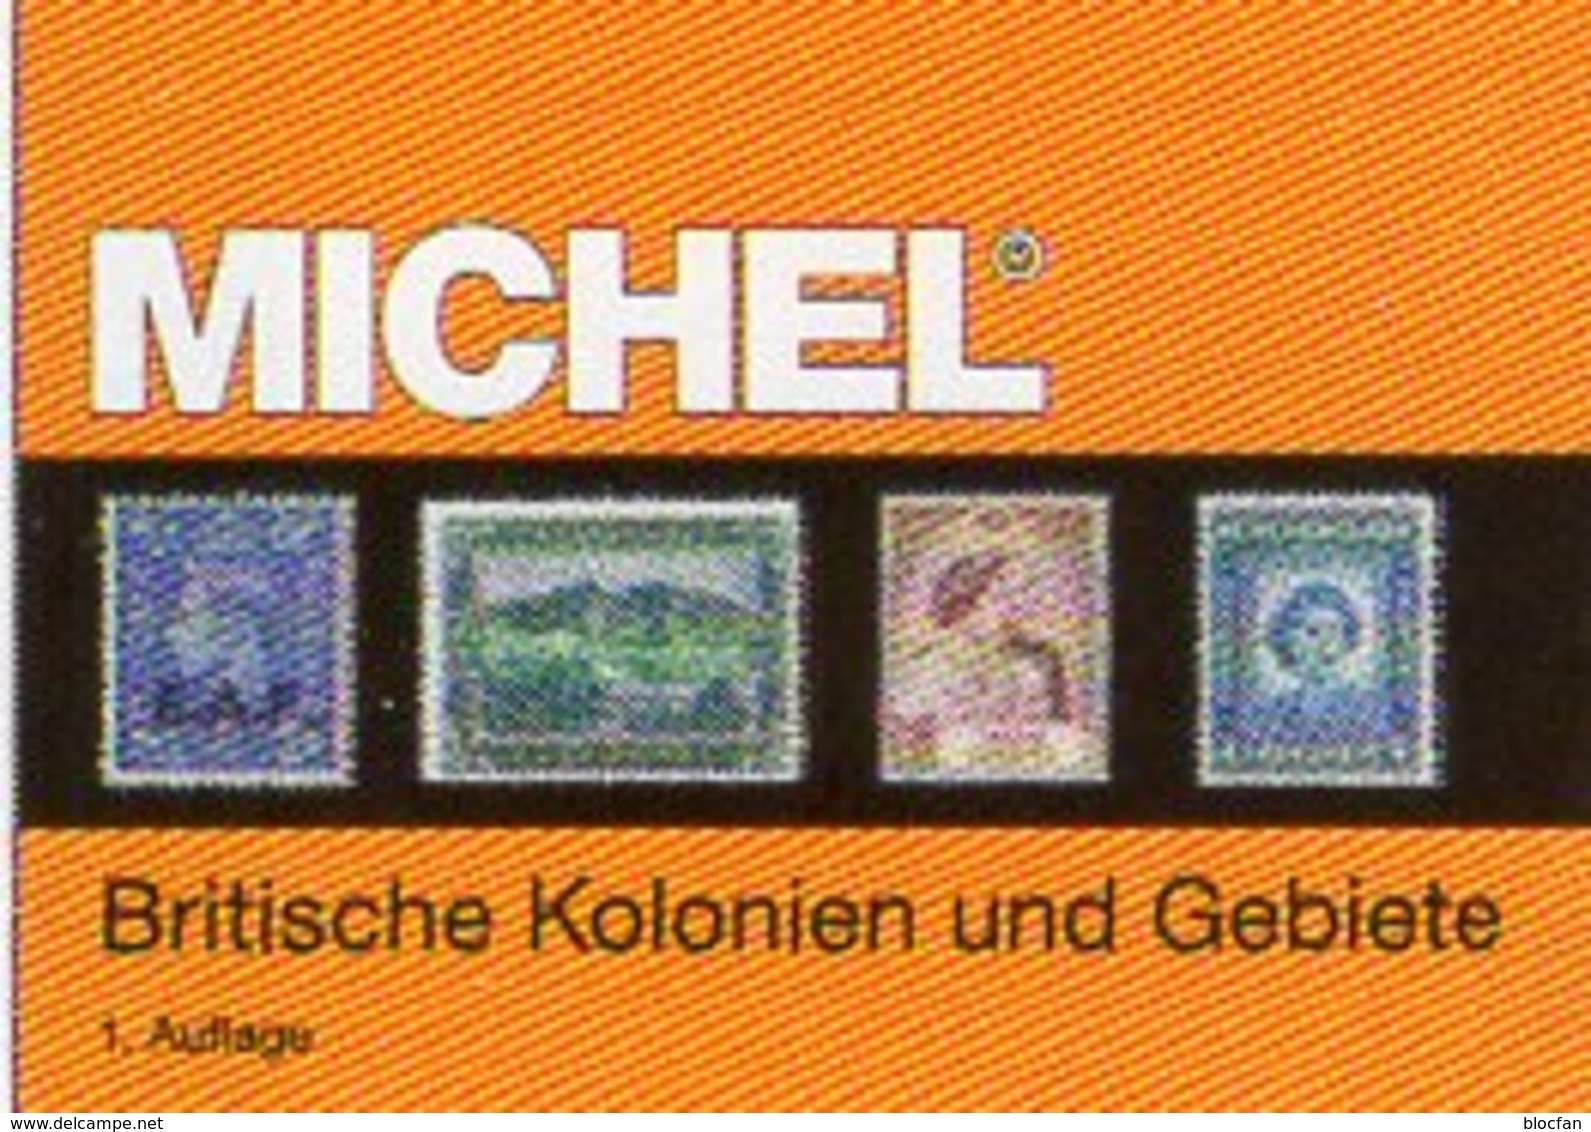 Großbritannien 1 Kolonien A-H MlCHEL 2018 New 89€ Britische Gebiete Stamp Catalogue Of Old UK ISBN978-3-95402-281-6 - Encyclopedias